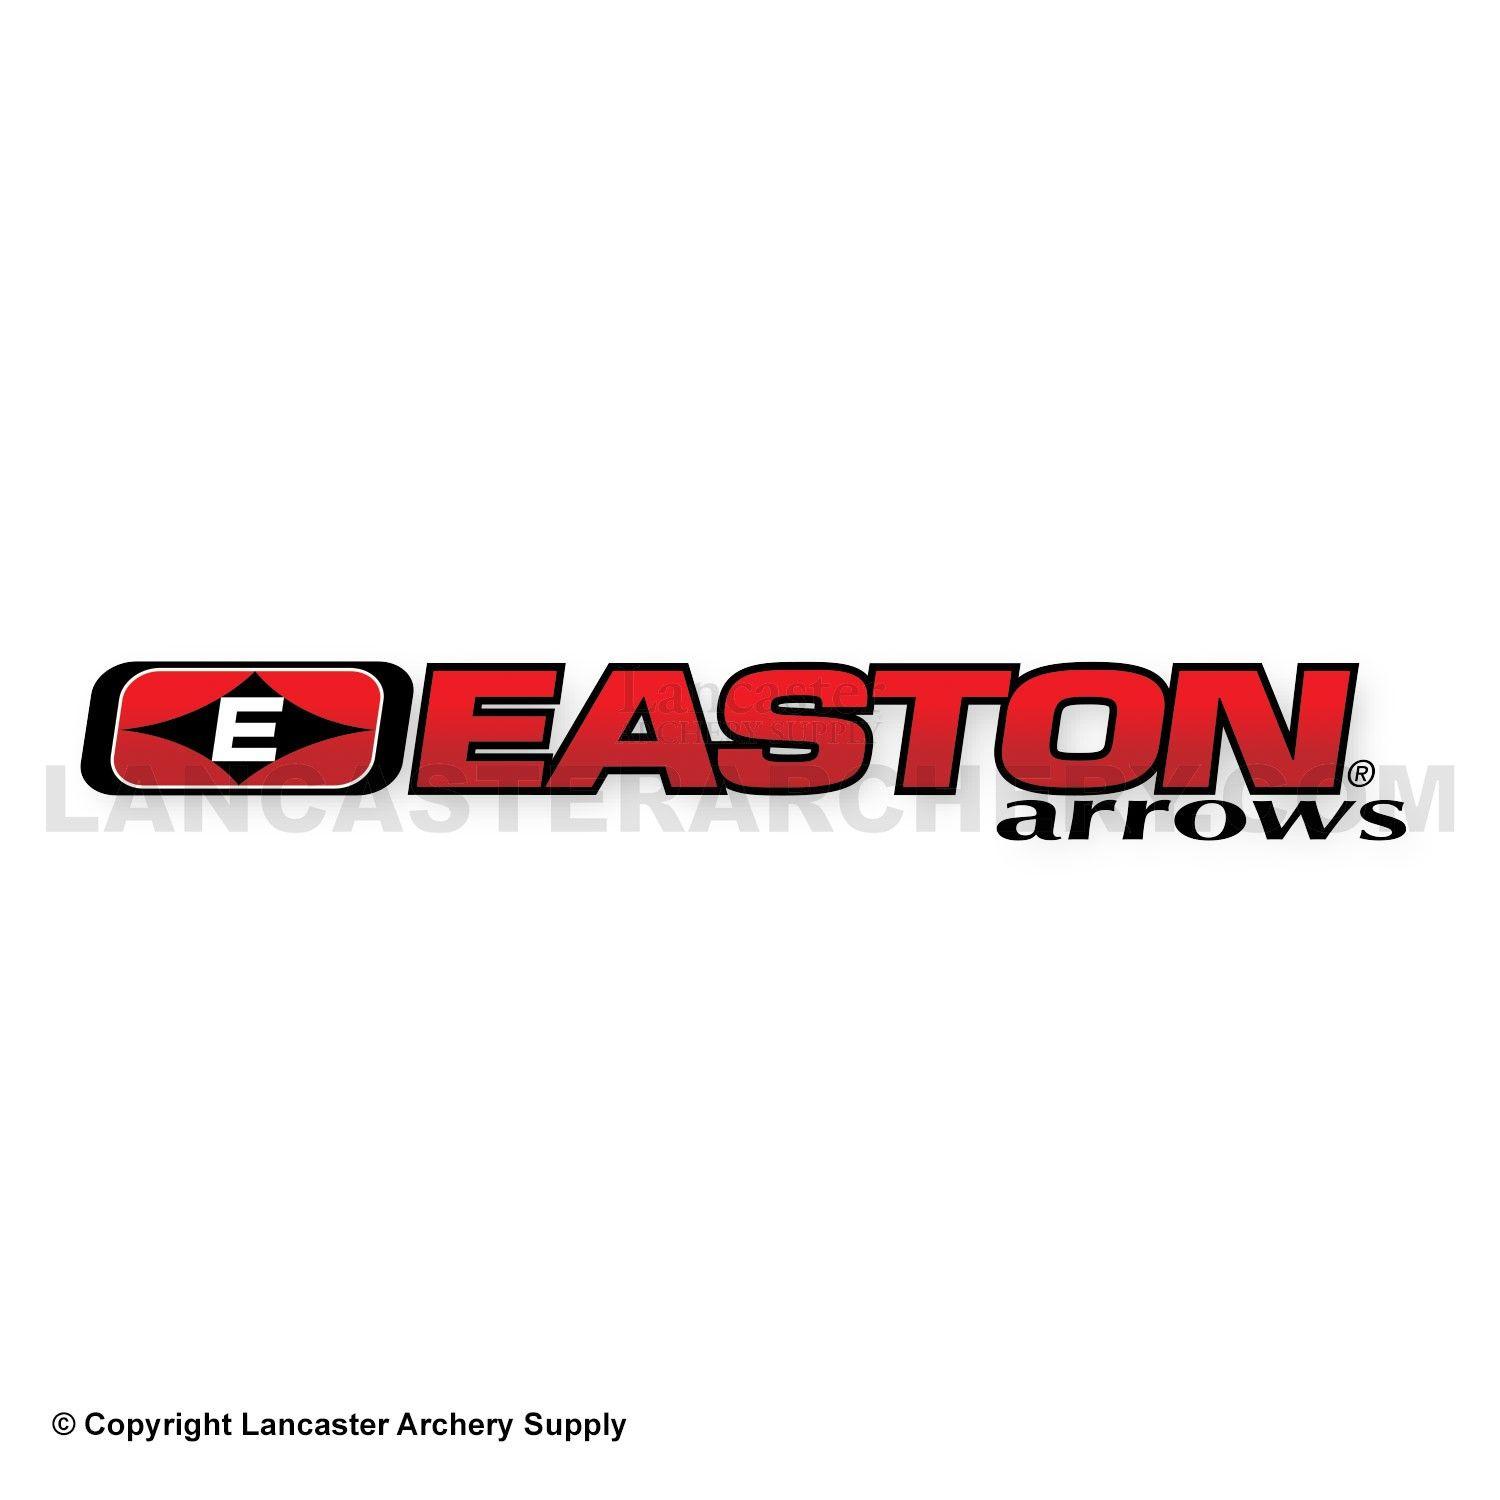 Easton Arrows Logo - Easton Arrows Logo Decal